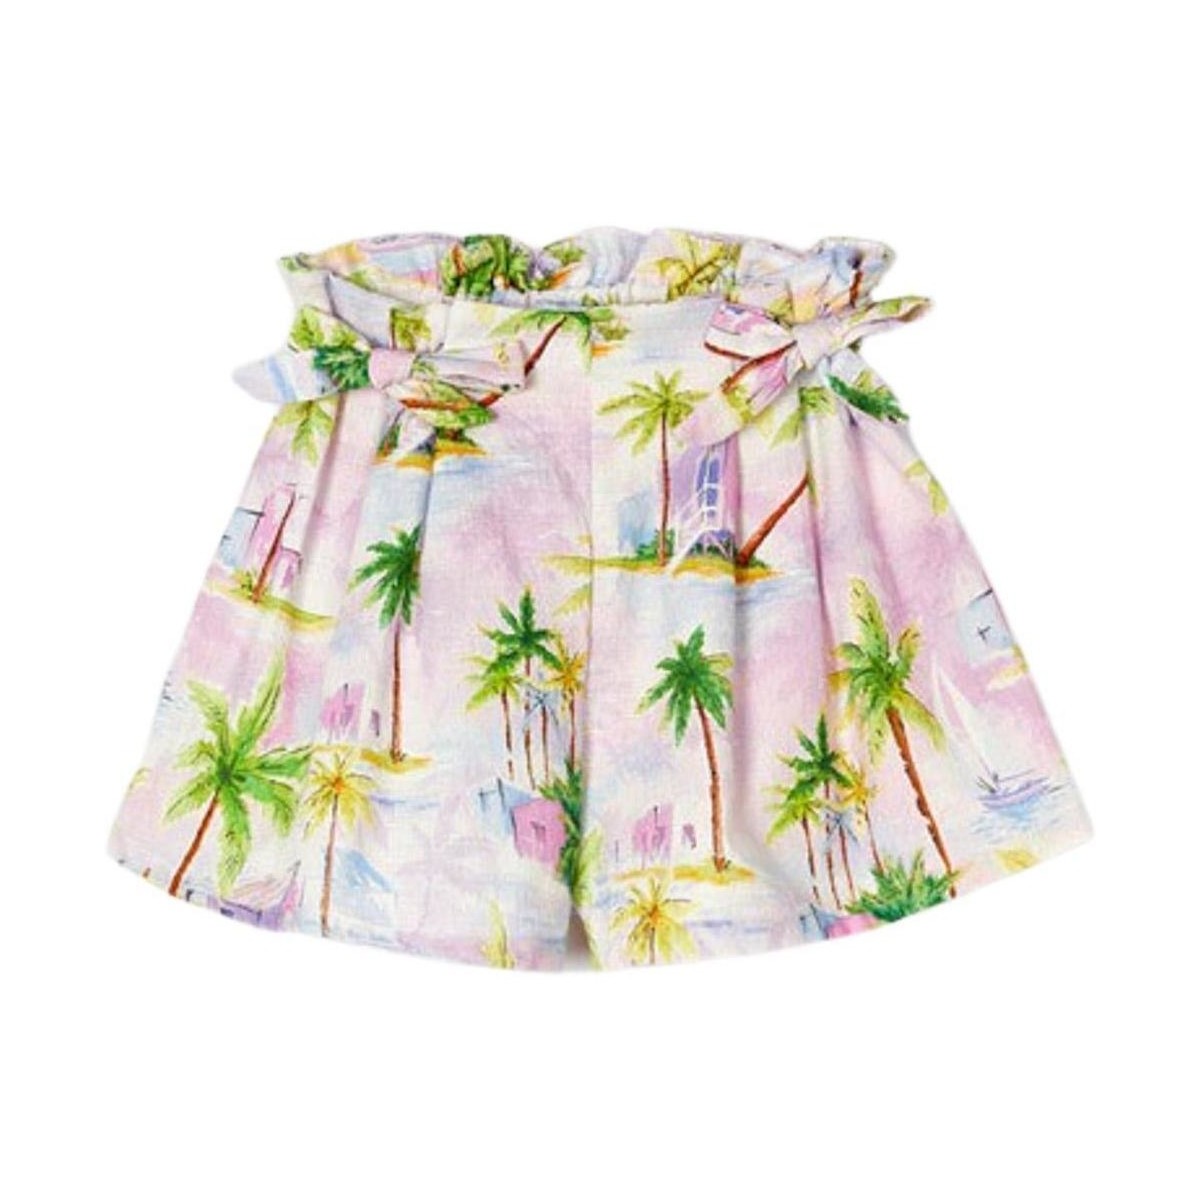 Kleidung Mädchen Shorts / Bermudas Mayoral  Multicolor